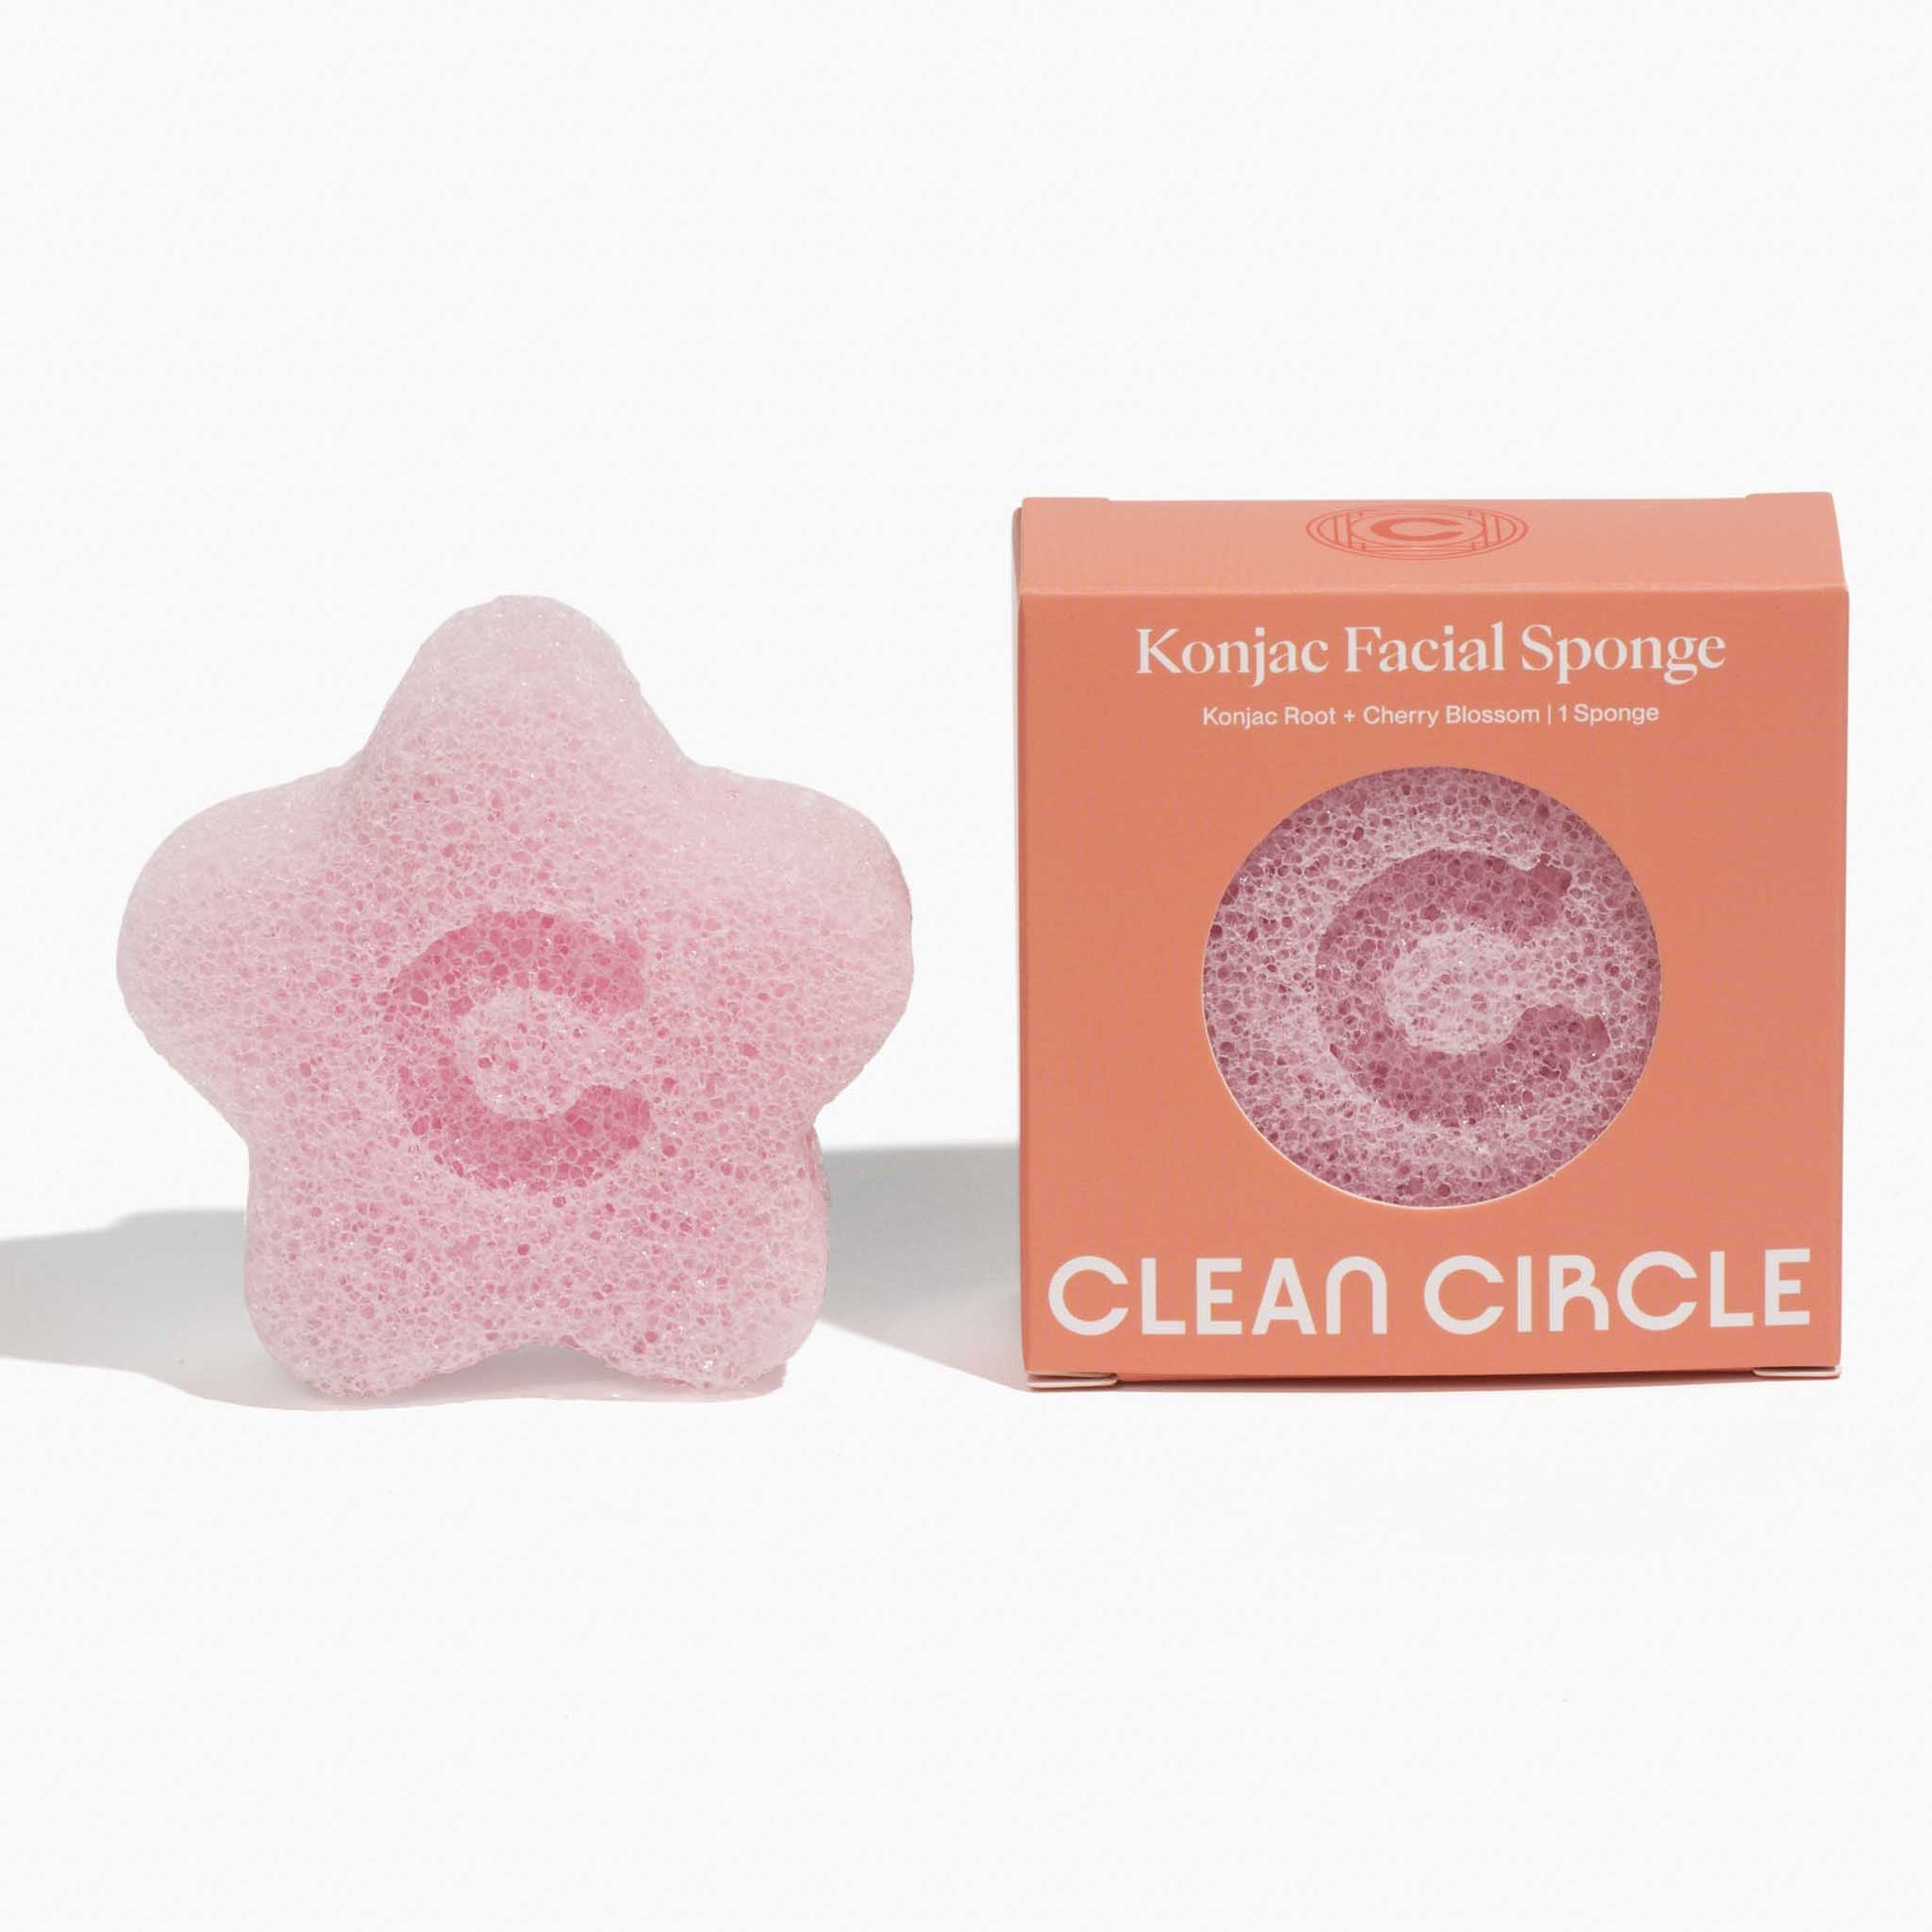 clean circle konjac facial sponge